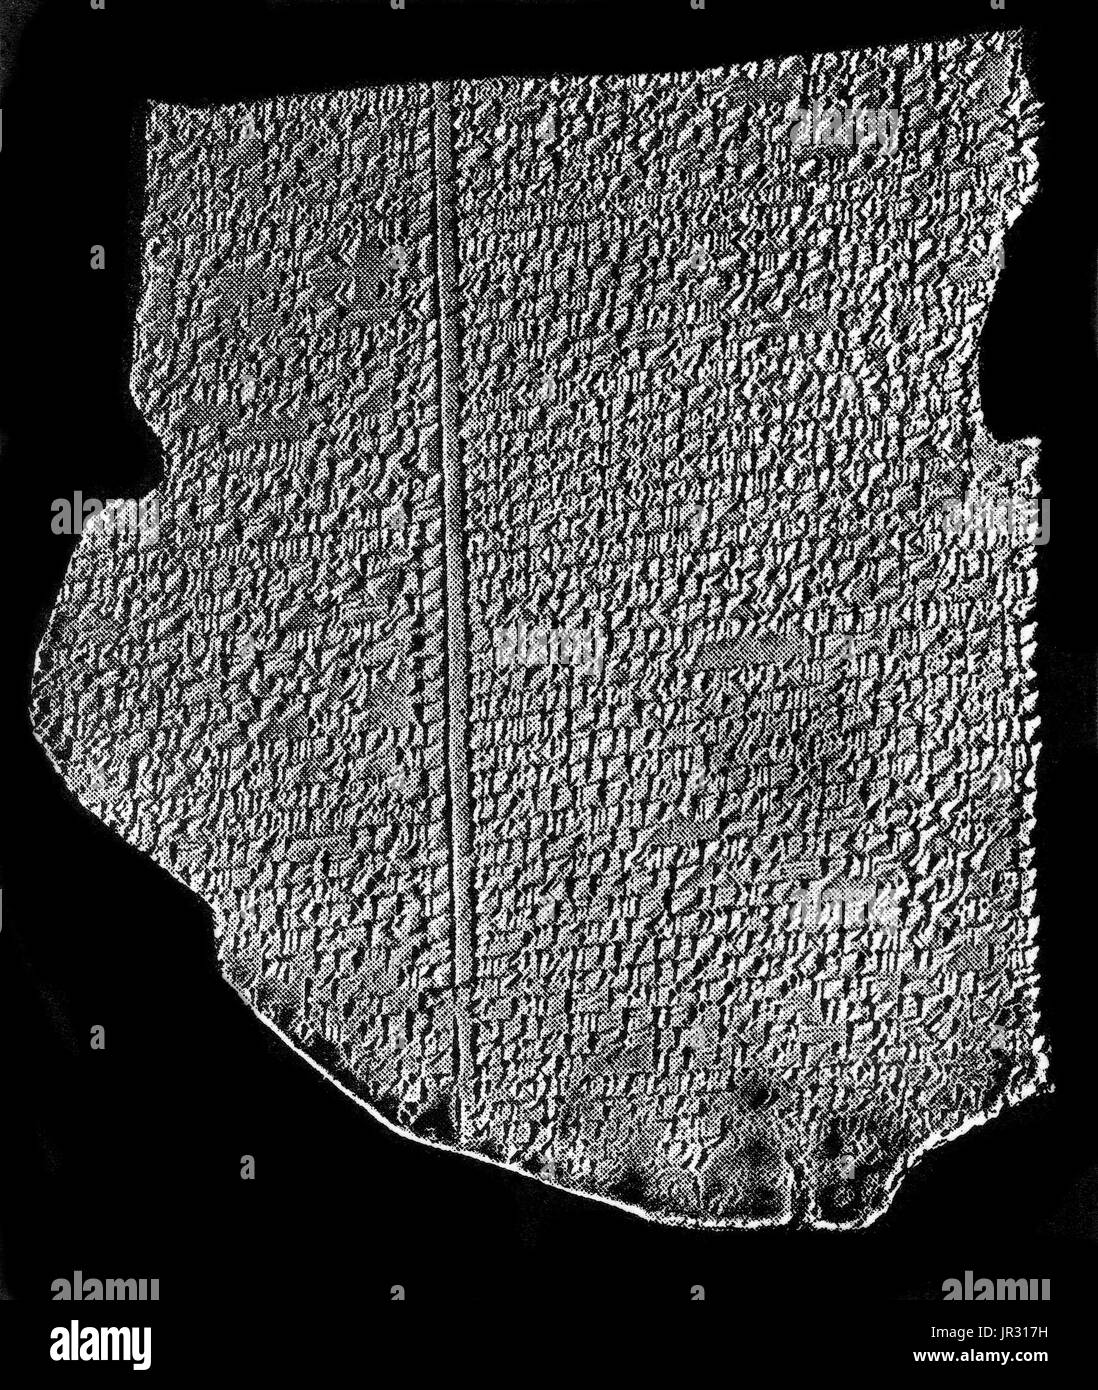 Die Amarna-Tabletten sind ein Archiv, geschrieben auf Tontafeln, hauptsächlich bestehend aus diplomatischen Korrespondenz zwischen der ägyptischen Regierung und ihre Vertreter in Canaan und Amurru während des neuen Reiches. Die Amarna-Briefe sind in ägyptologische Forschung, ungewöhnlich, da sie meist in akkadischen Keilschrift, das Schriftsystem von altem Mesopotamia, anstatt des alten Ägypten geschrieben werden. Die schriftliche Korrespondenz erstreckt sich über einen Zeitraum von höchstens 30 Jahre. Die Amarna-Briefe sind von großer Bedeutung für biblische Studien sowie semitischen Sprachwissenschaft, da sie in Licht die Stockfoto